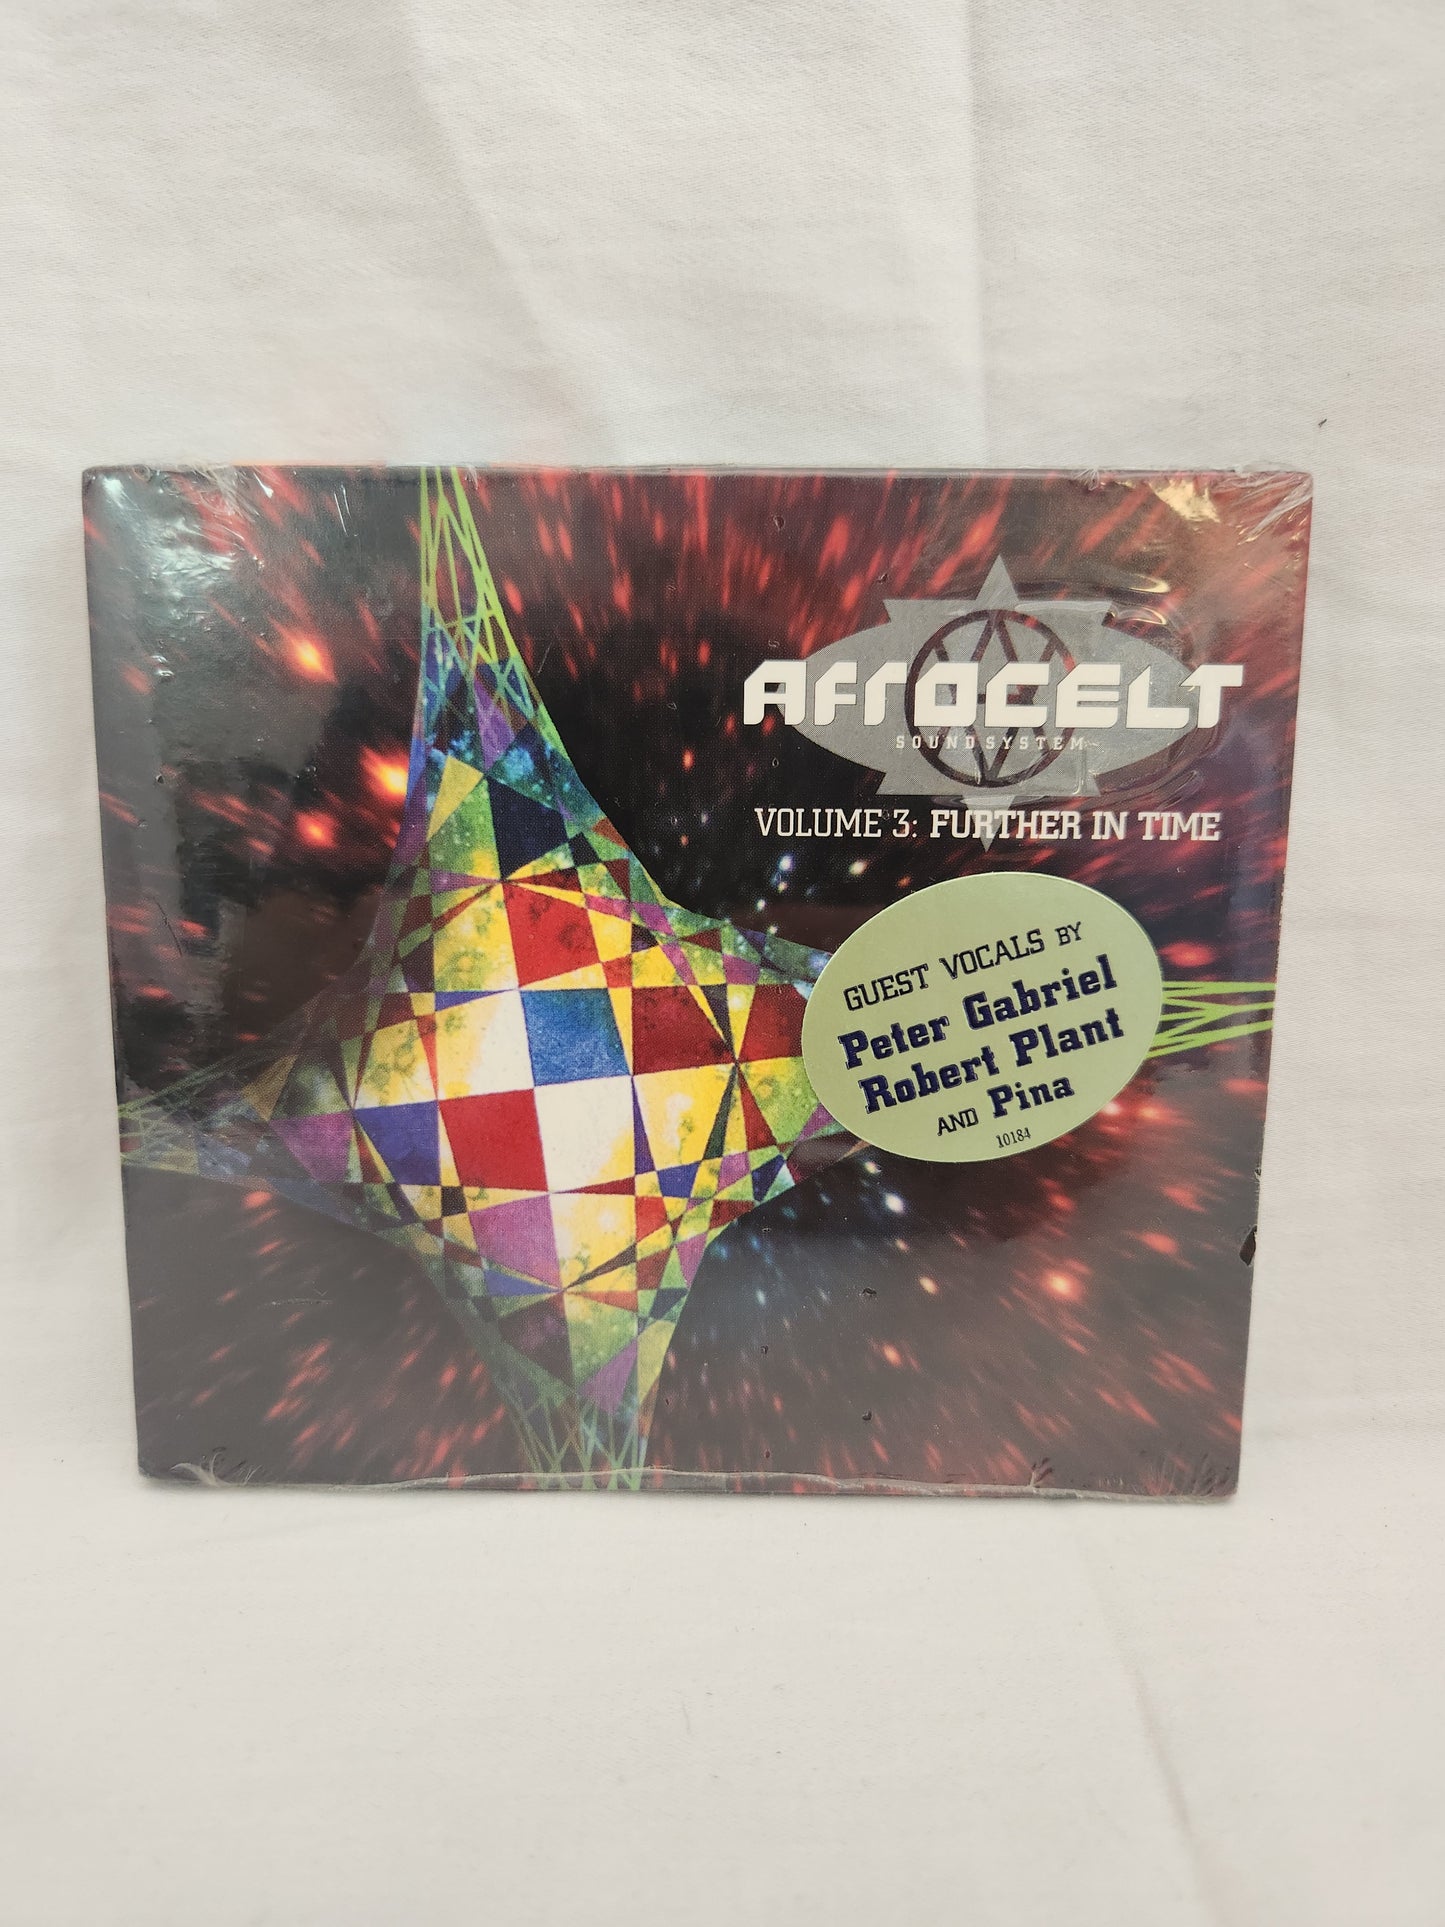 Afro Celt Sound System 2-CD Set (Factory Sealed)